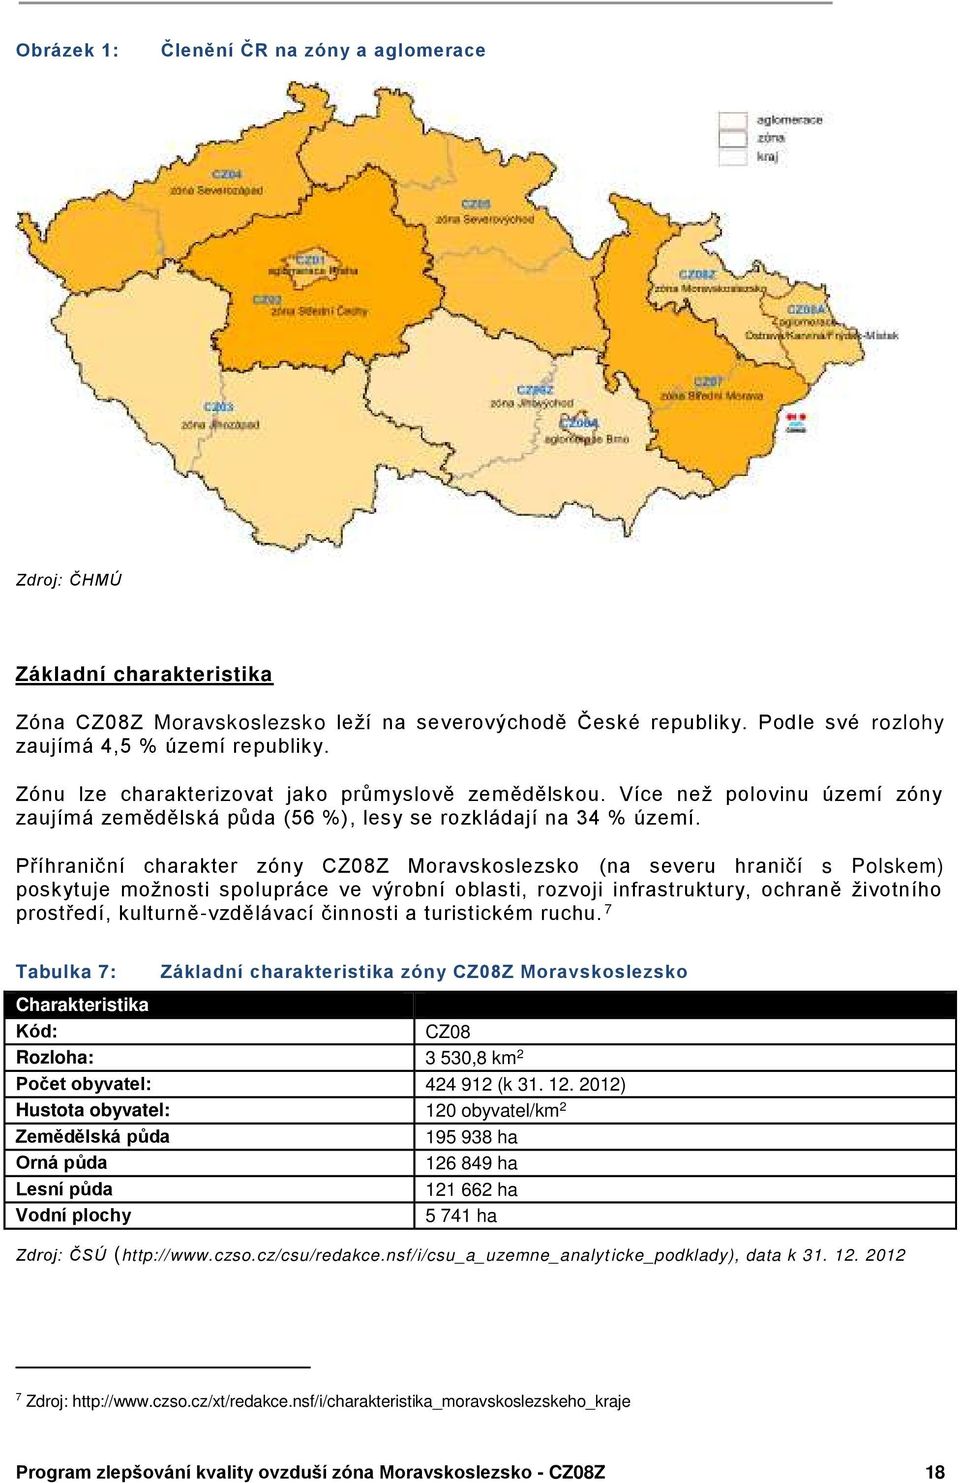 Píhraniční charakter zóny CZ0ŘZ Moravskoslezsko (na severu hraničí s Polskem) poskytuje možnosti spolupráce ve výrobní oblasti, rozvoji infrastruktury, ochraně životního prostedí, kulturně-vzdělávací